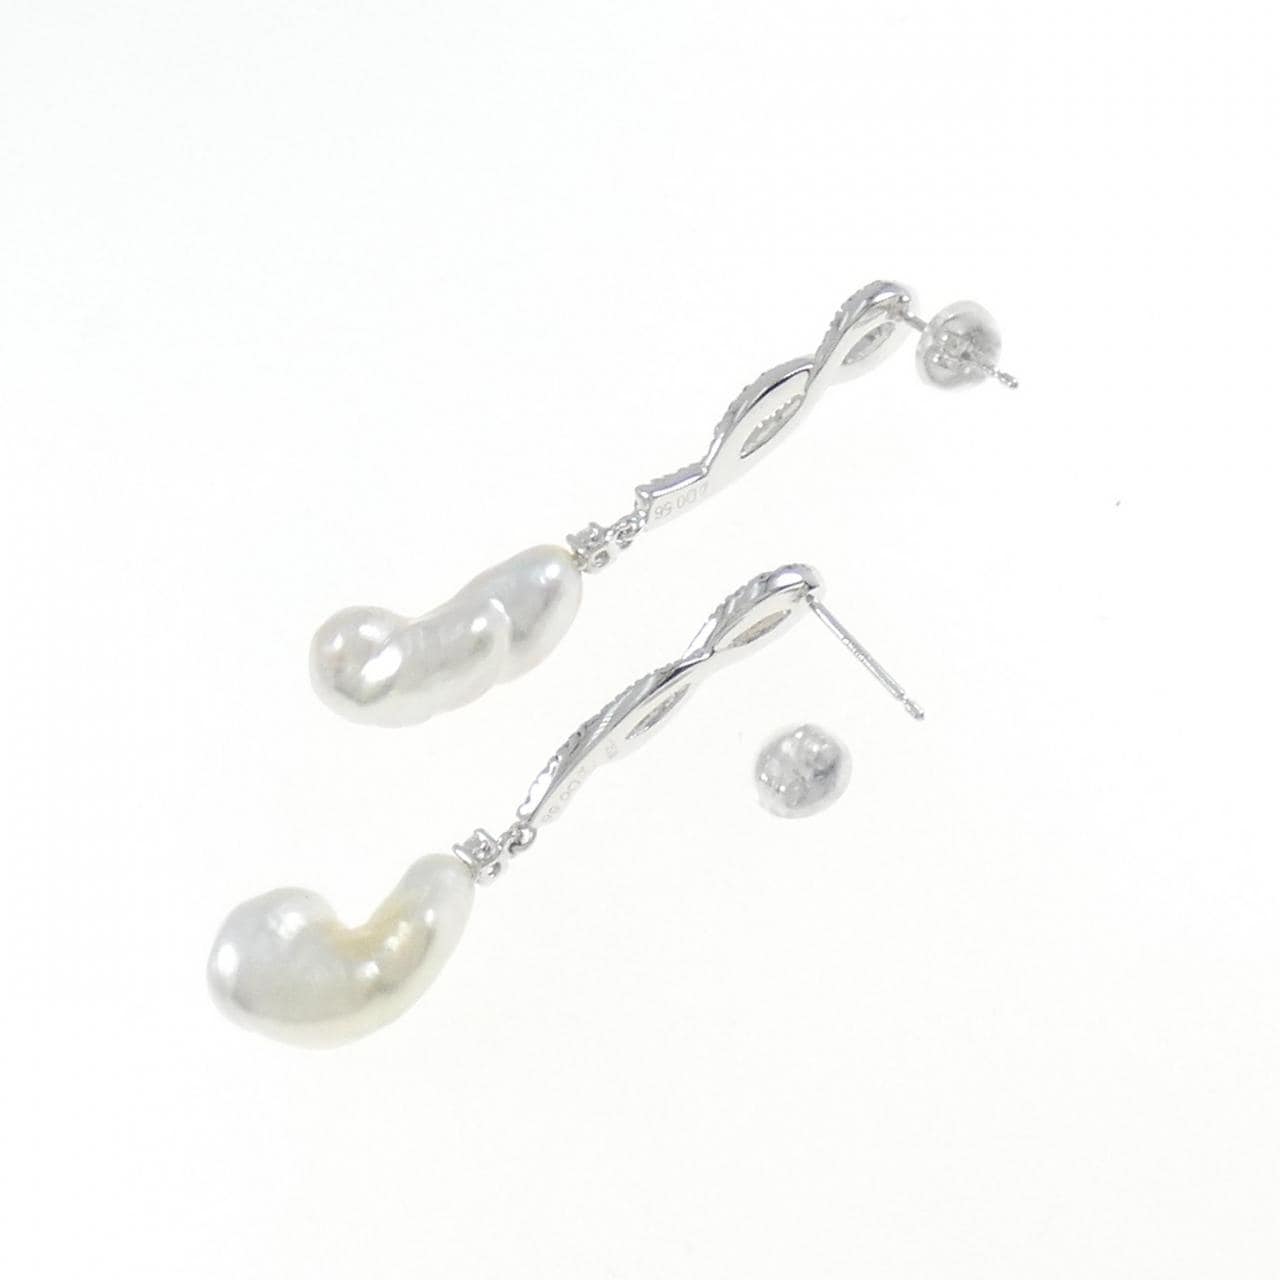 K18WG White Butterfly Pearl earrings